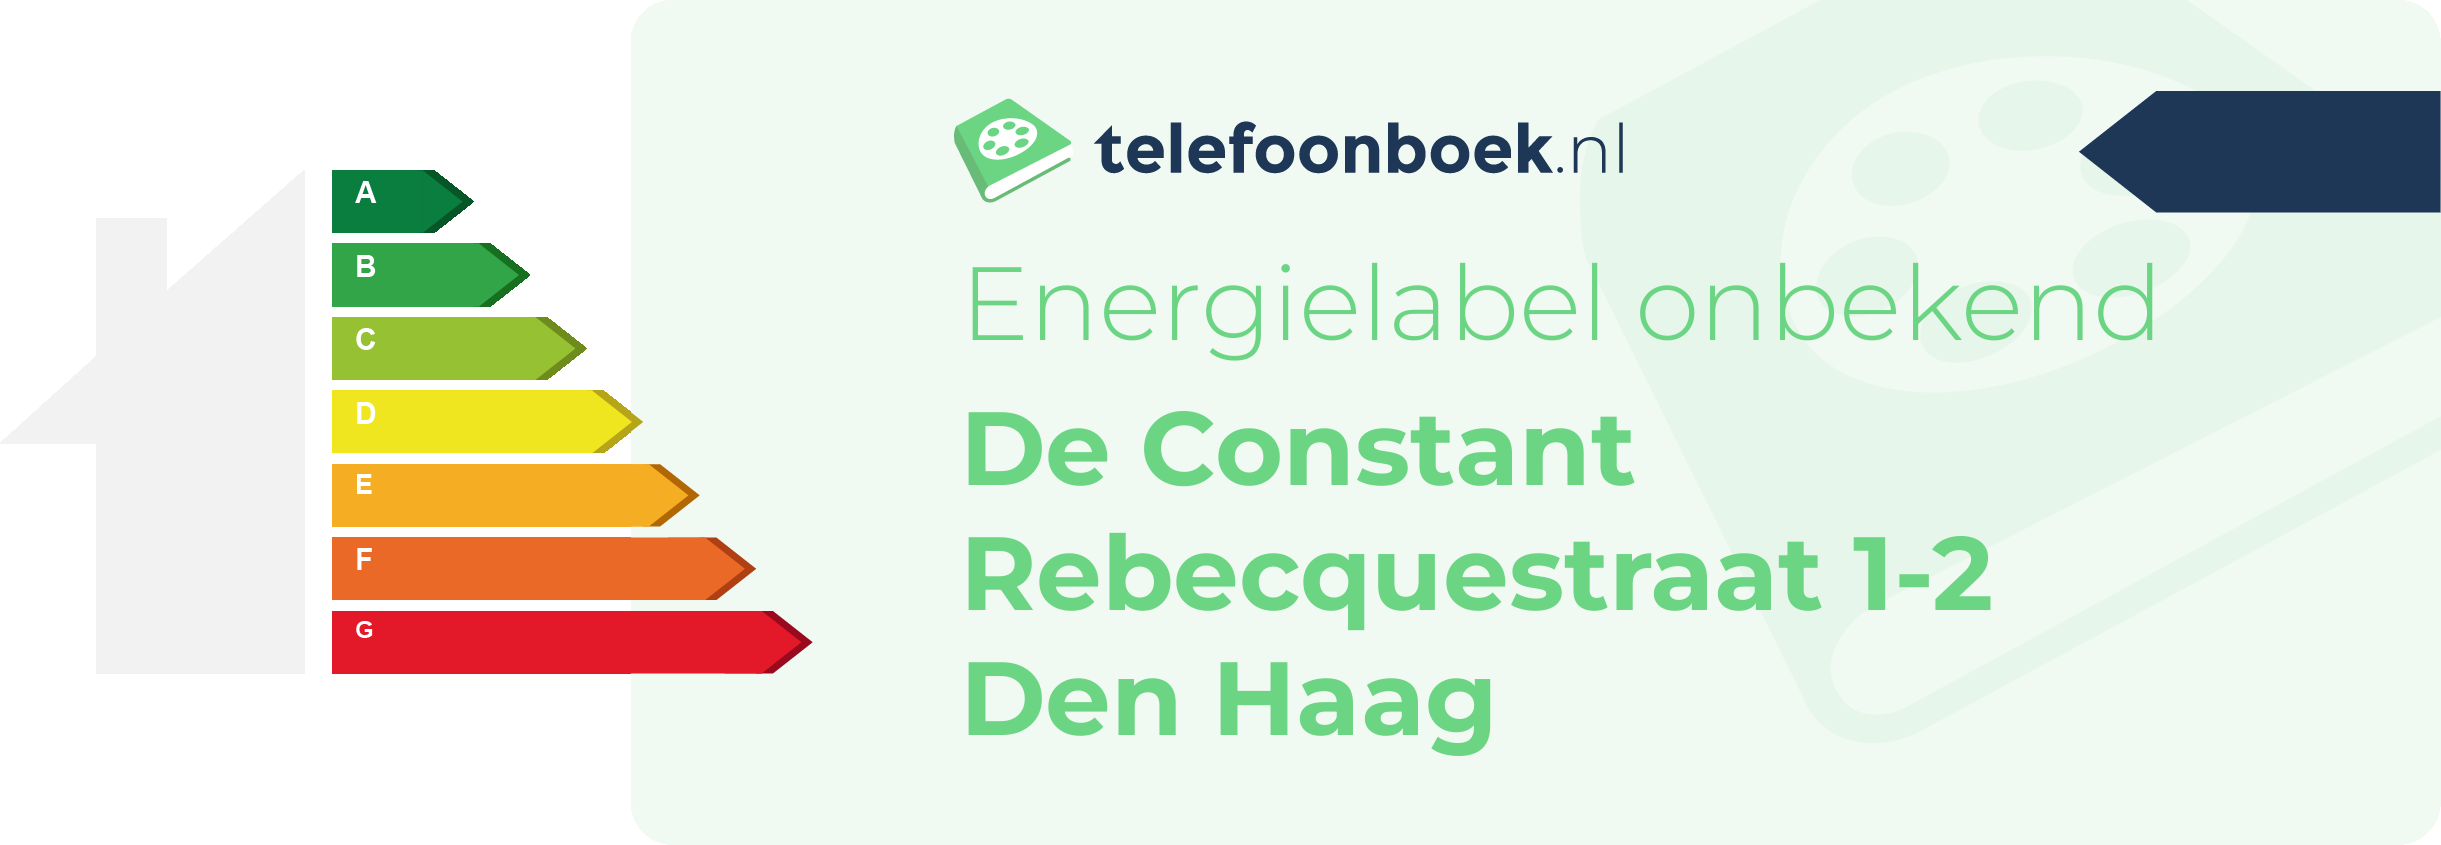 Energielabel De Constant Rebecquestraat 1-2 Den Haag